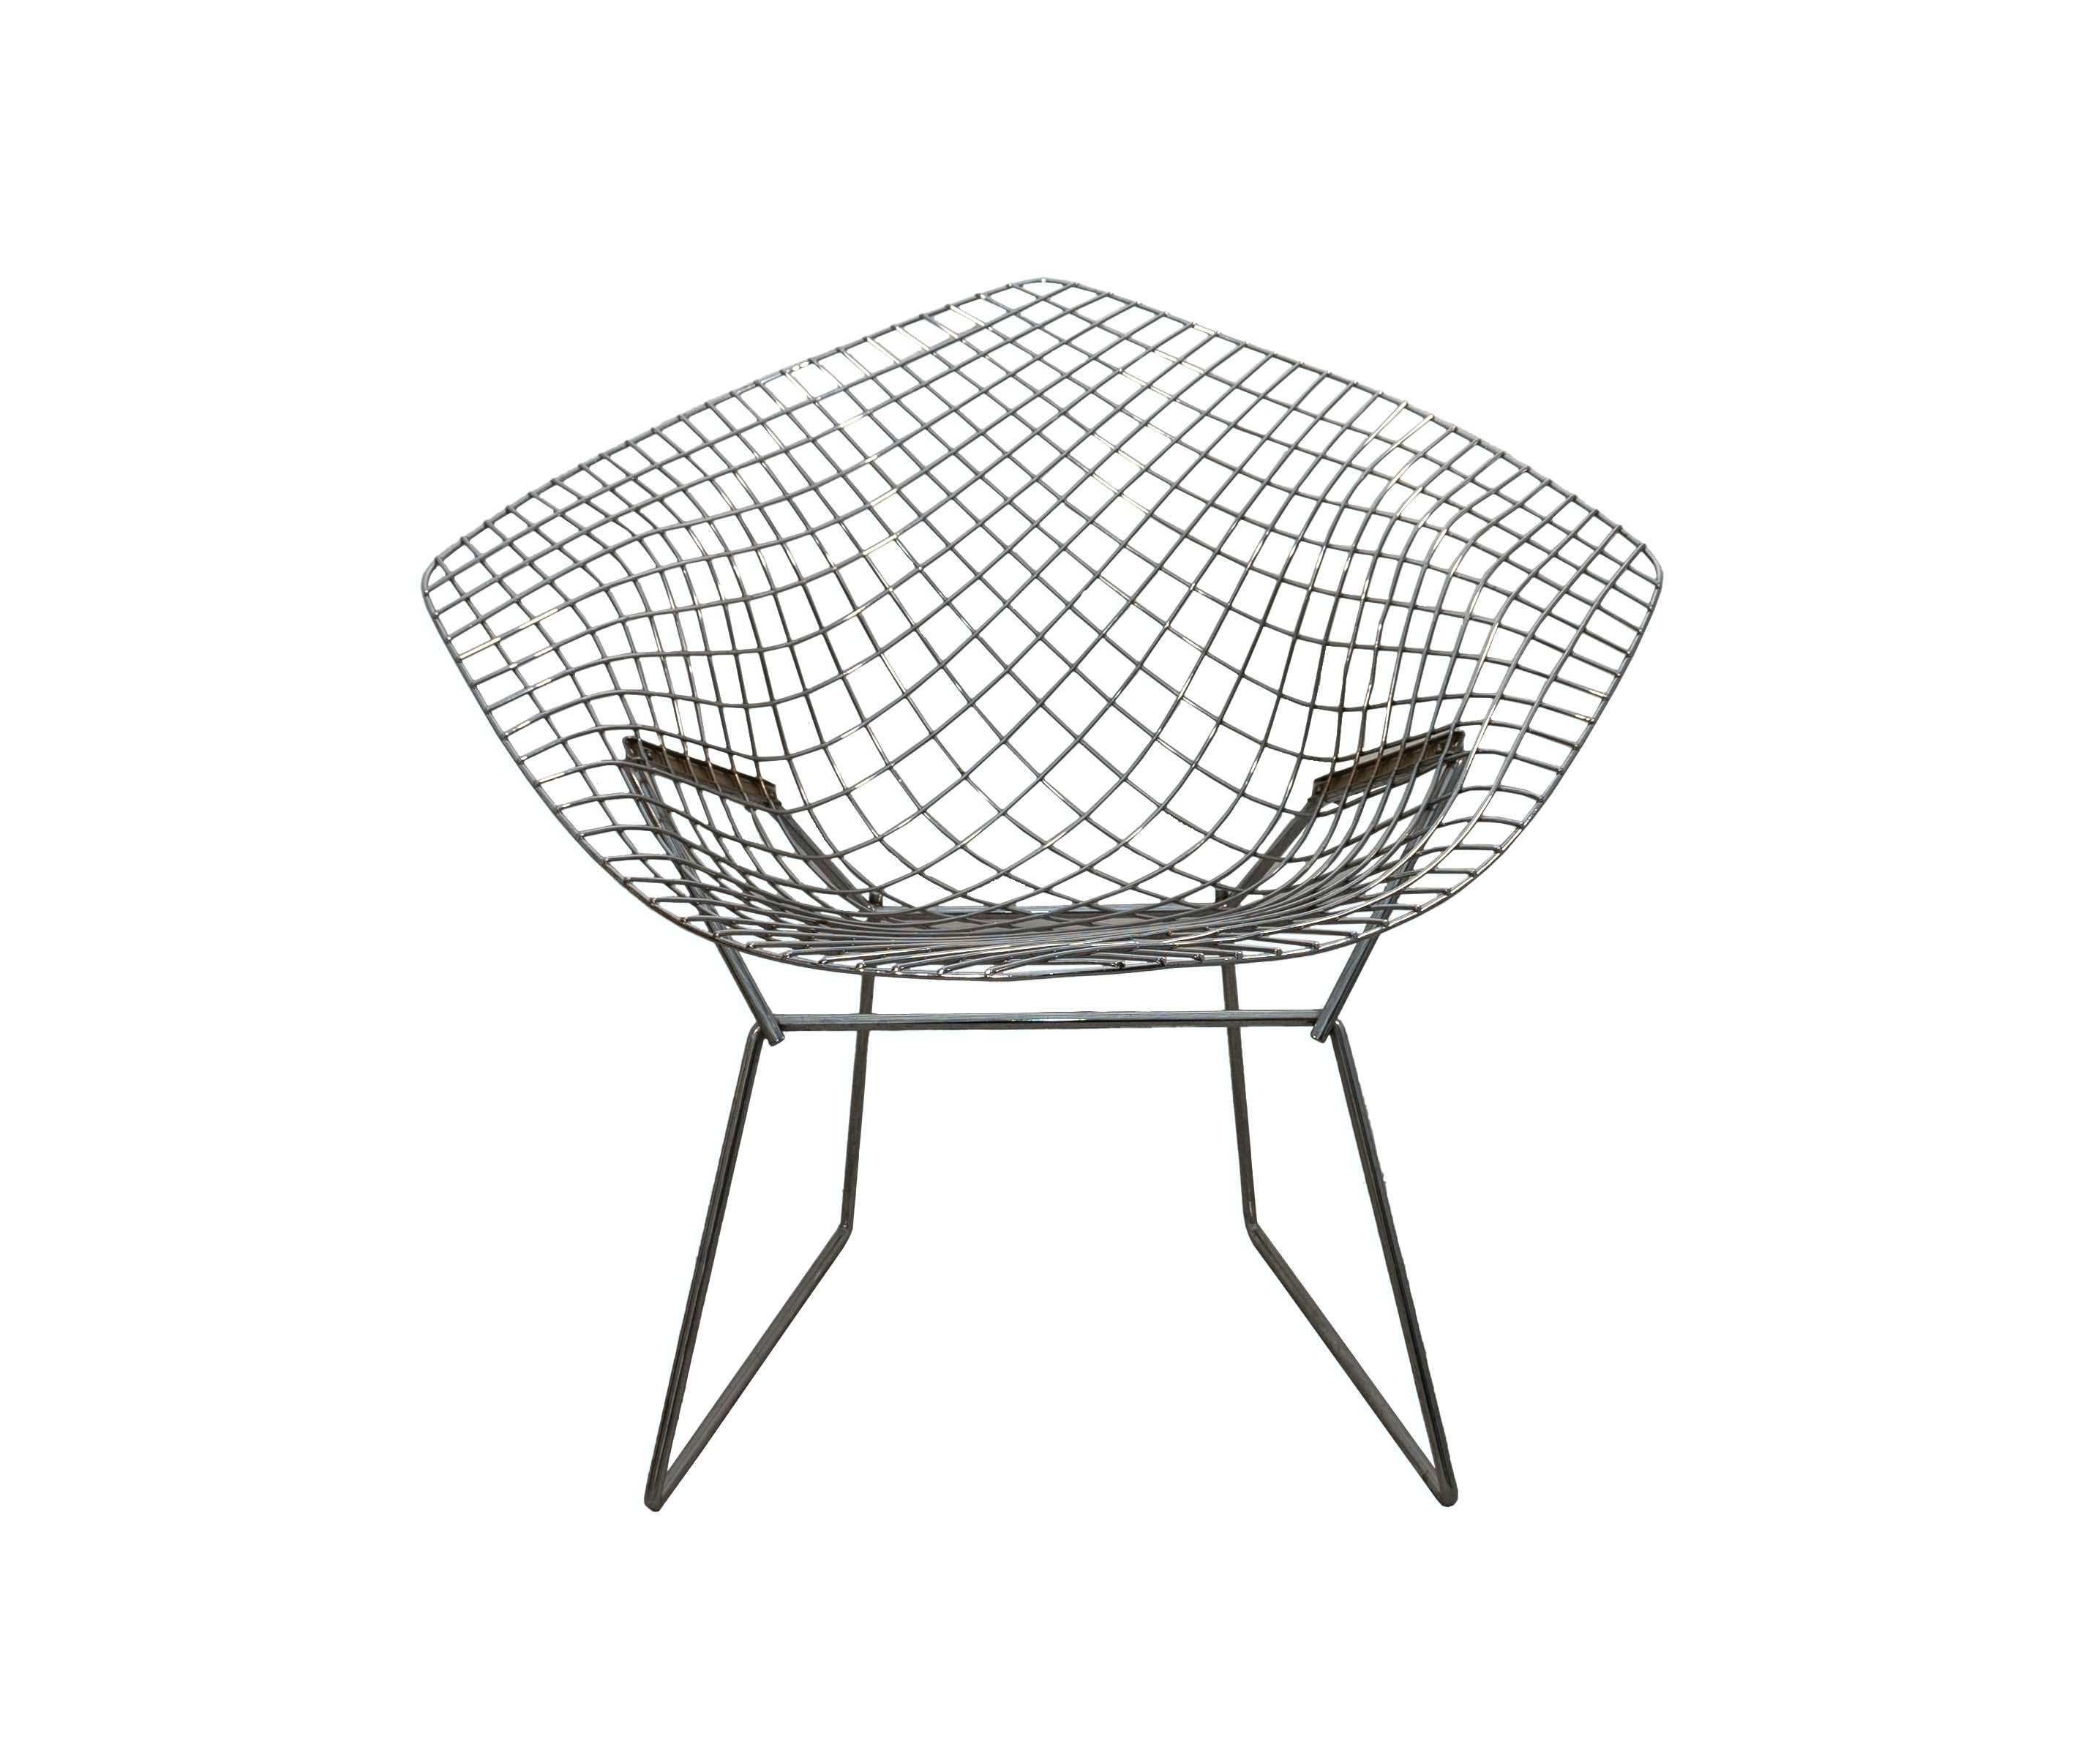 Entdecken Sie skulpturale Raffinesse mit diesem Harry Bertoia for Knoll Wire Diamond Chair, einem wahren Juwel der Mid Century Modern. Sein filigranes und luftiges Drahtgestell ist ein Triumph aus raumgreifender Form und Funktion und bietet eine